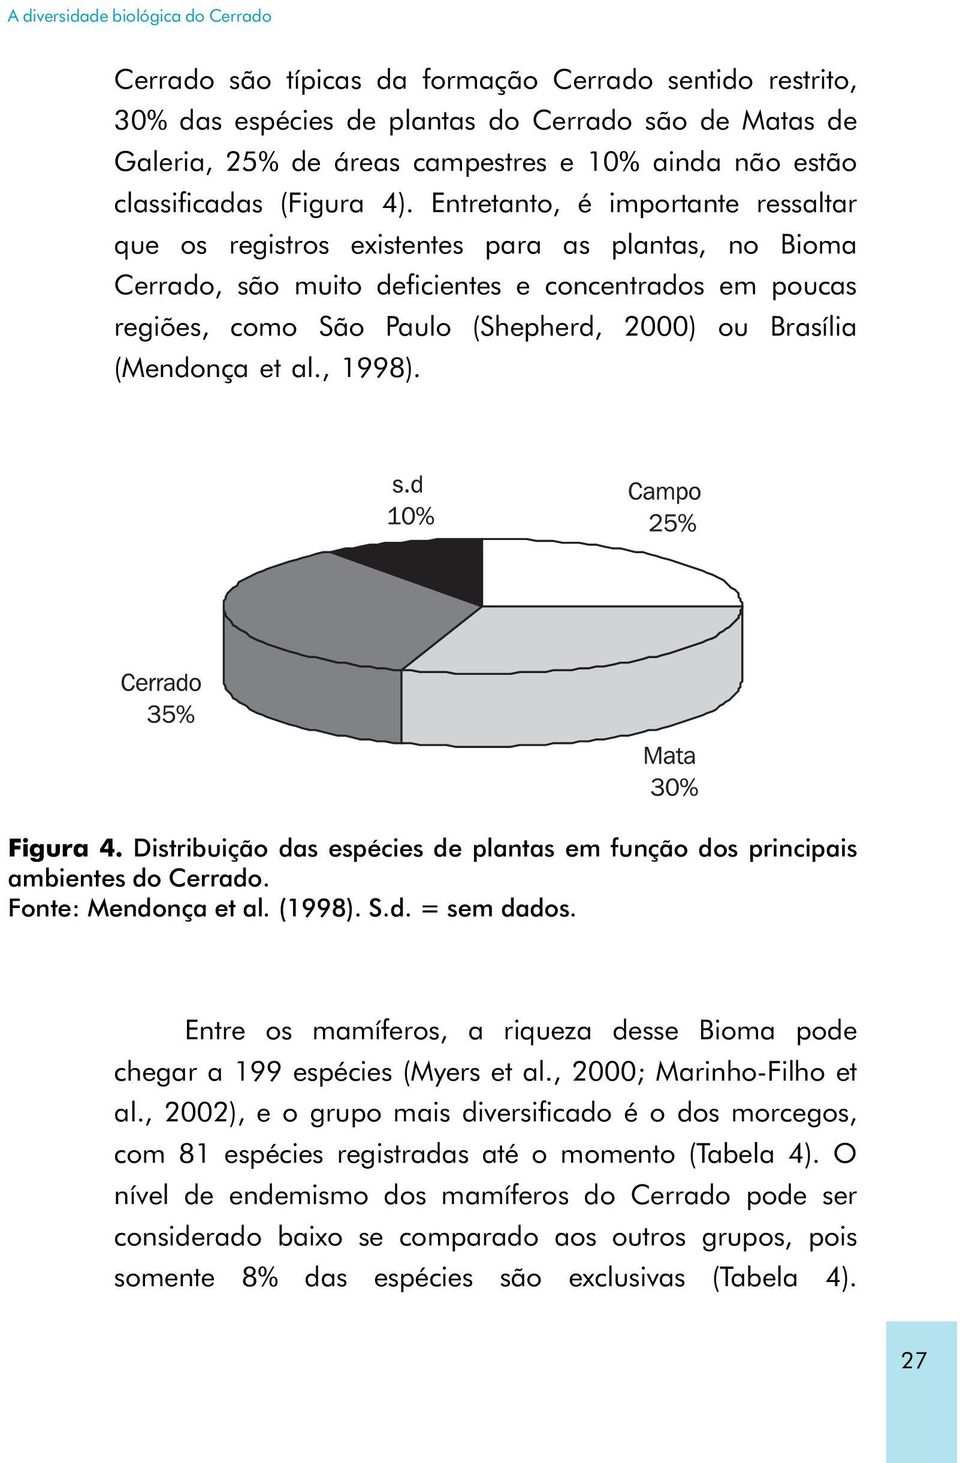 Entretanto, é importante ressaltar que os registros existentes para as plantas, no Bioma Cerrado, são muito deficientes e concentrados em poucas regiões, como São Paulo (Shepherd, 2000) ou Brasília